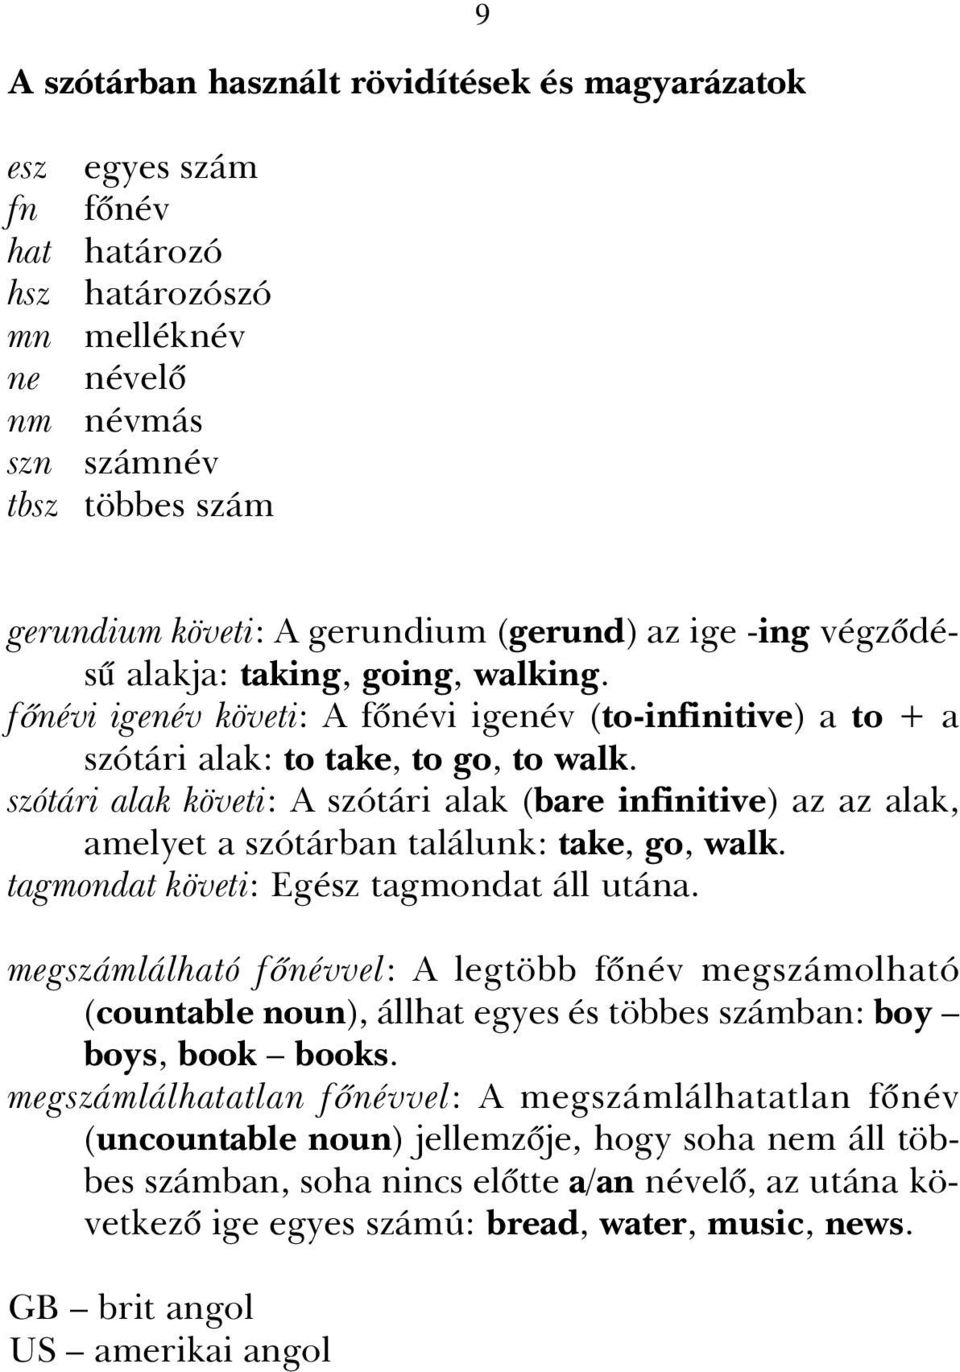 szótári alak követi: A szótári alak (bare infinitive) az az alak, amelyet a szótárban találunk: take, go, walk. tagmondat követi: Egész tagmondat áll utána.